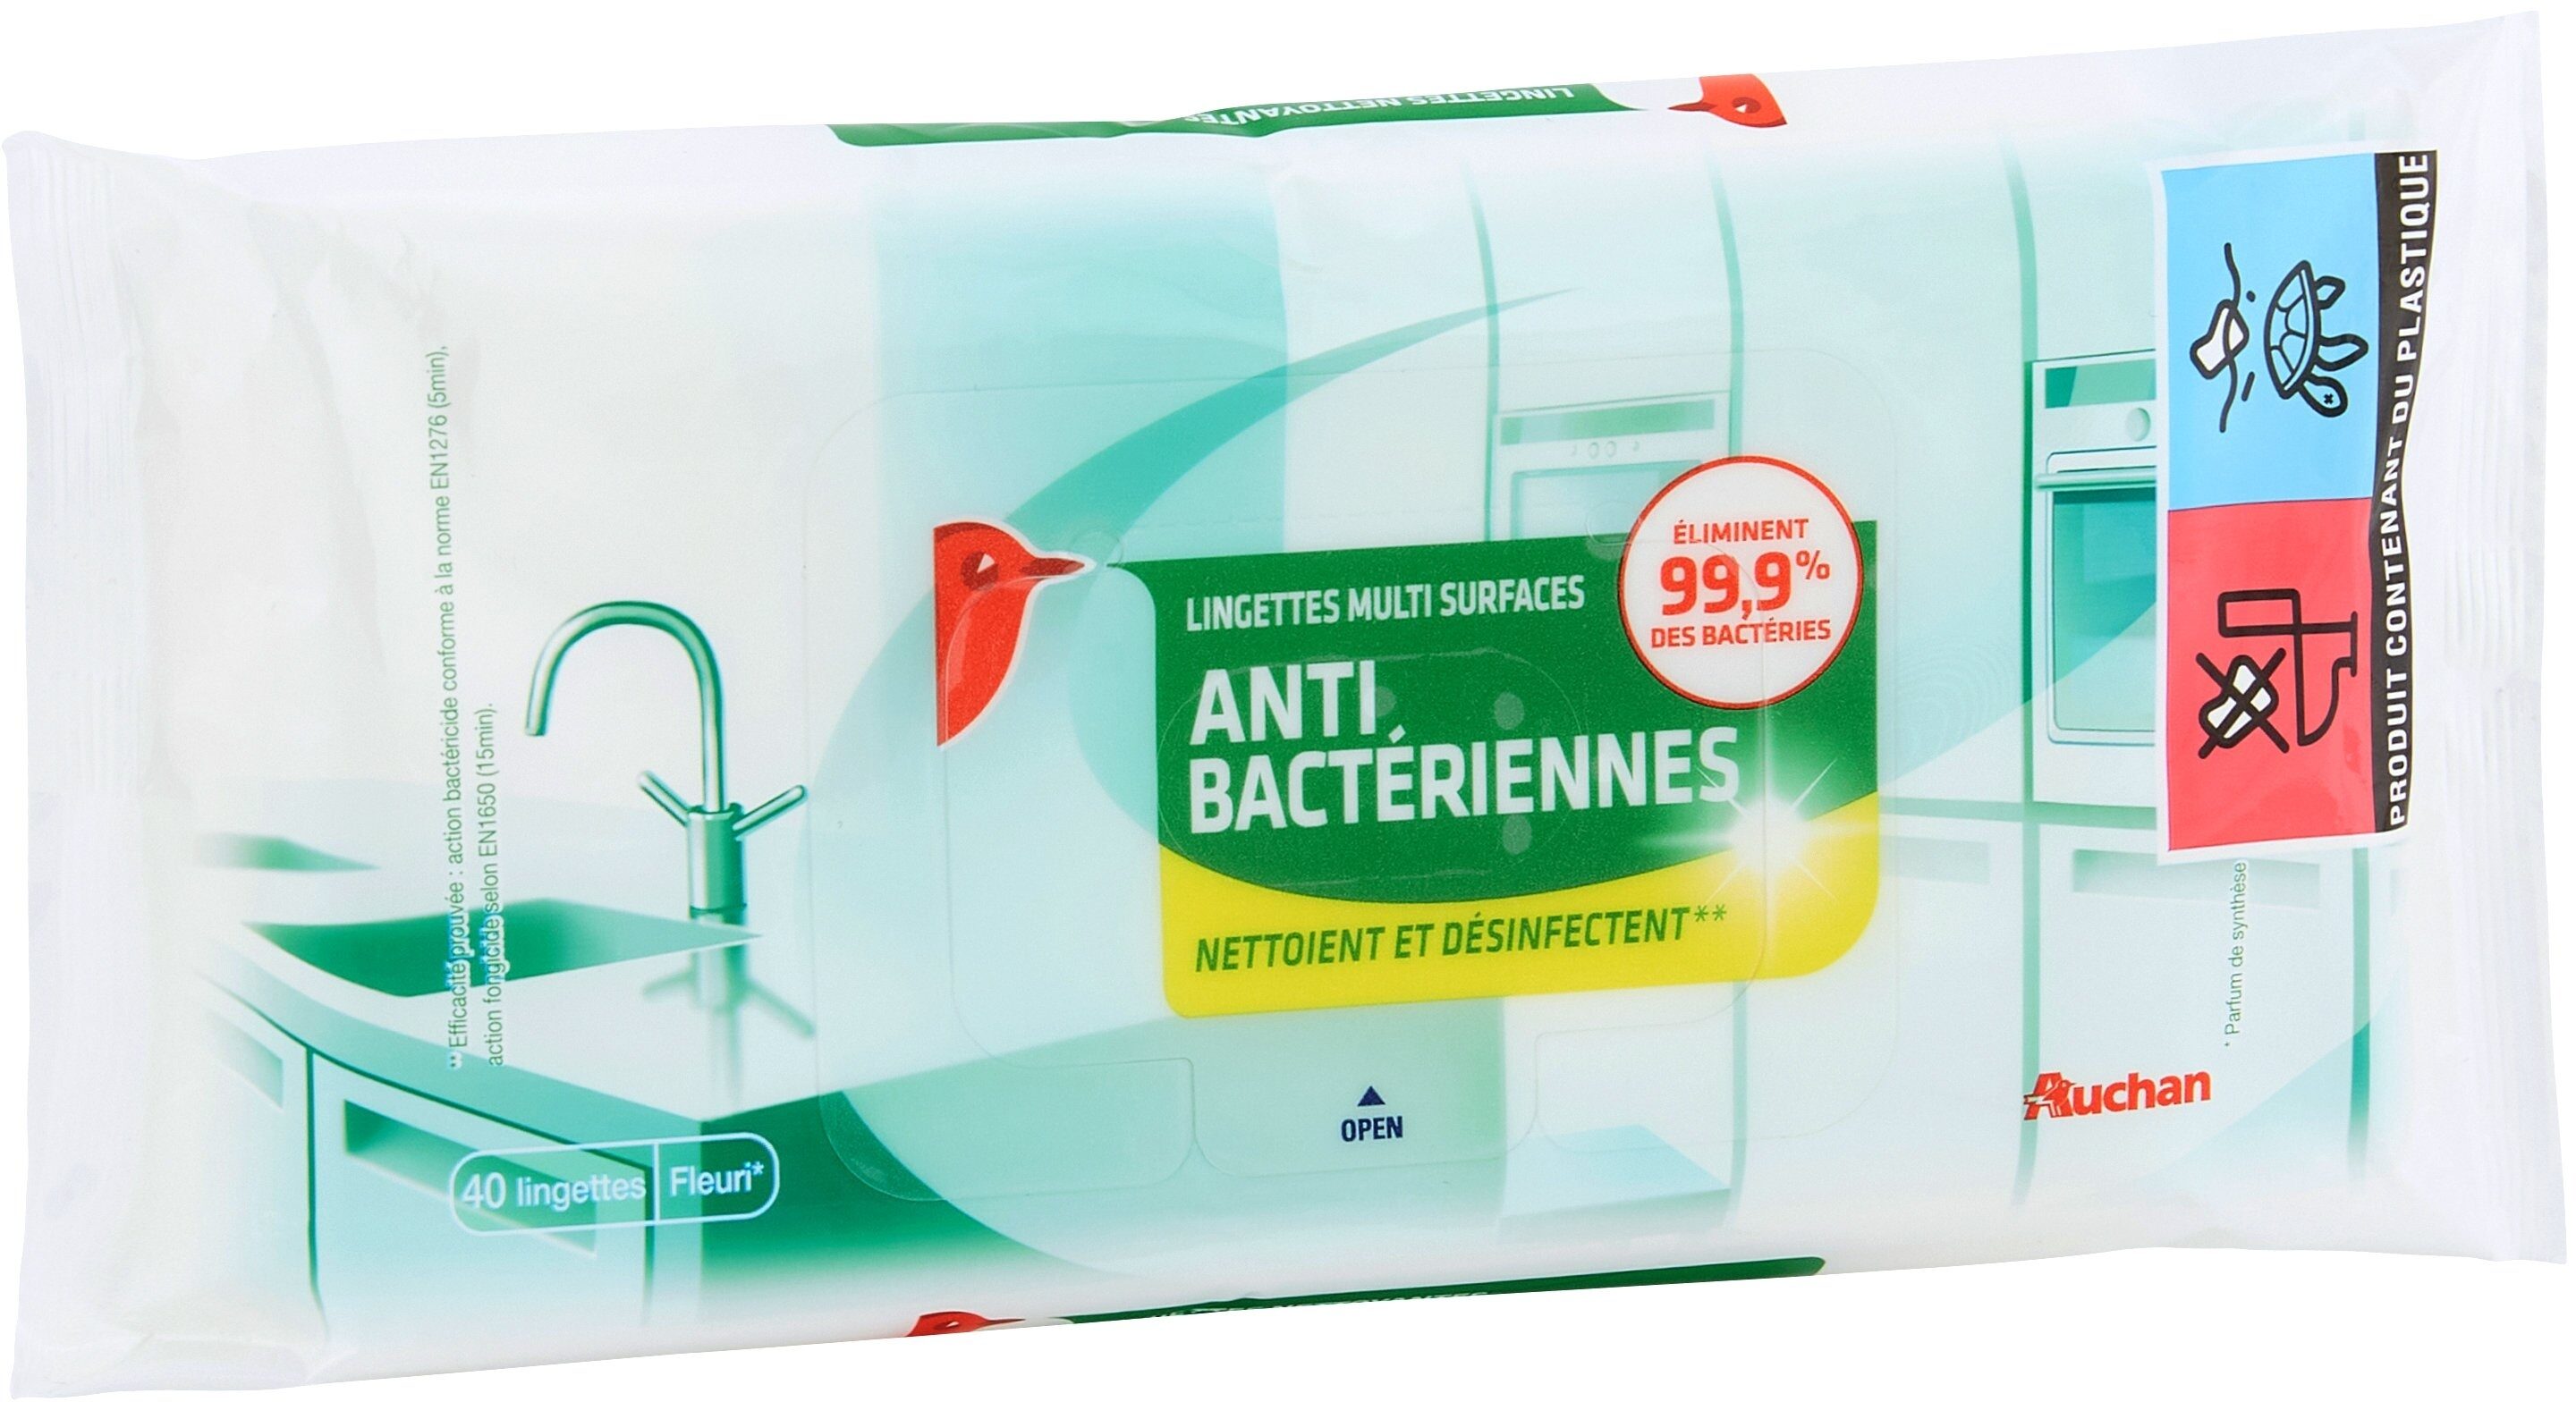 Lingettes nettoyantes multi-surfaces anti-bactériennes - Product - fr